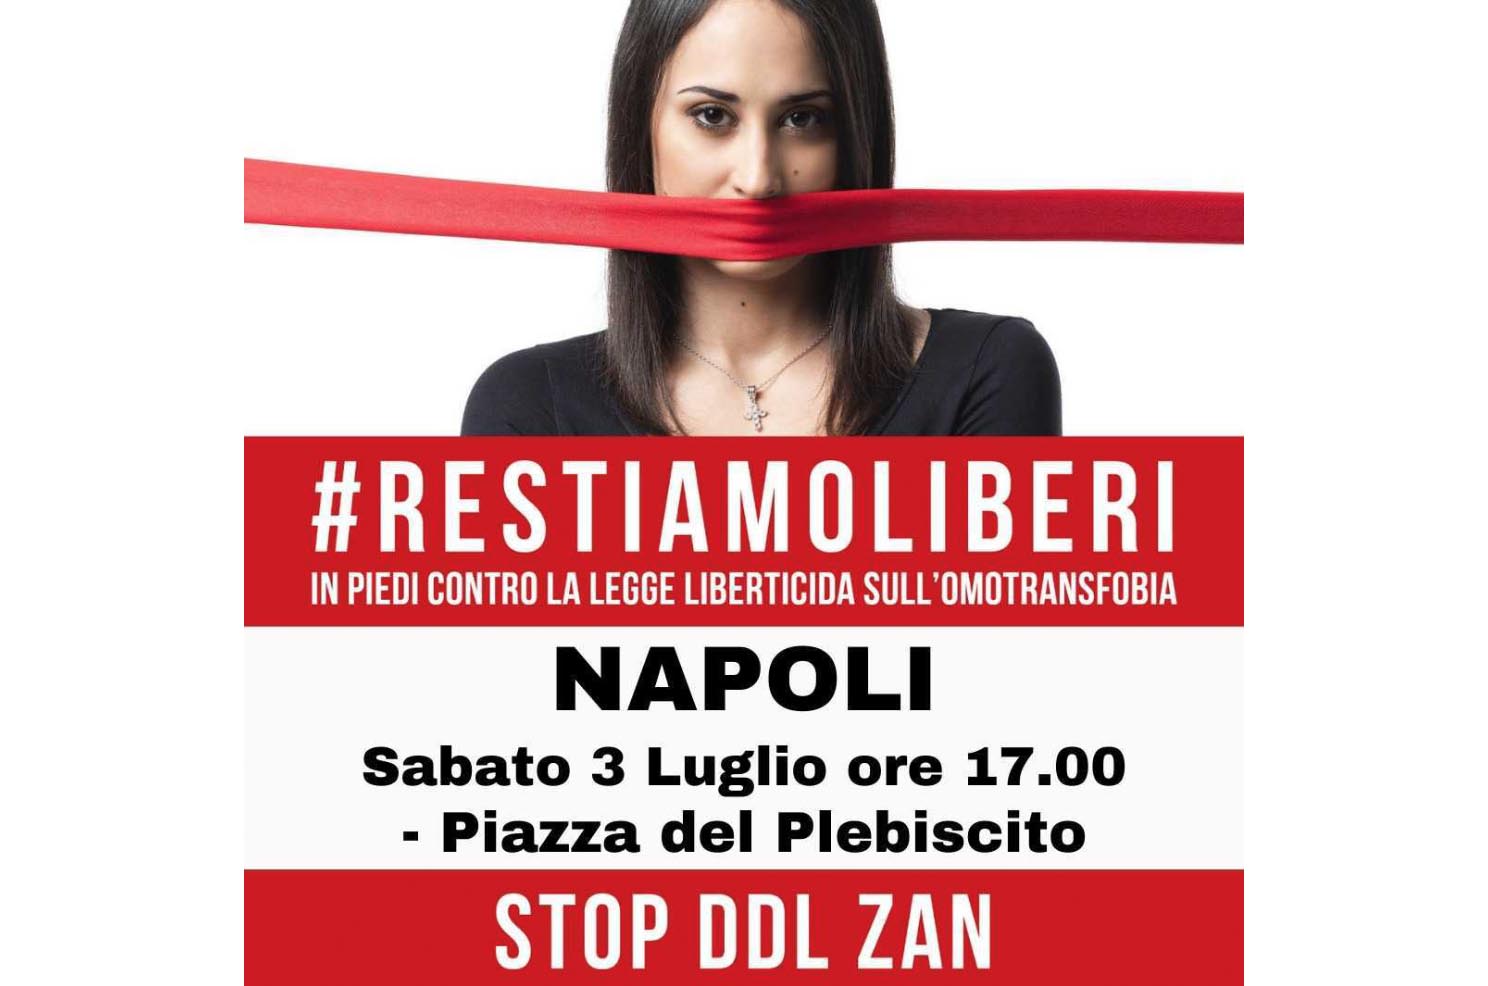 #RestiamoLiberi - No al Ddl Zan a Napoli 1